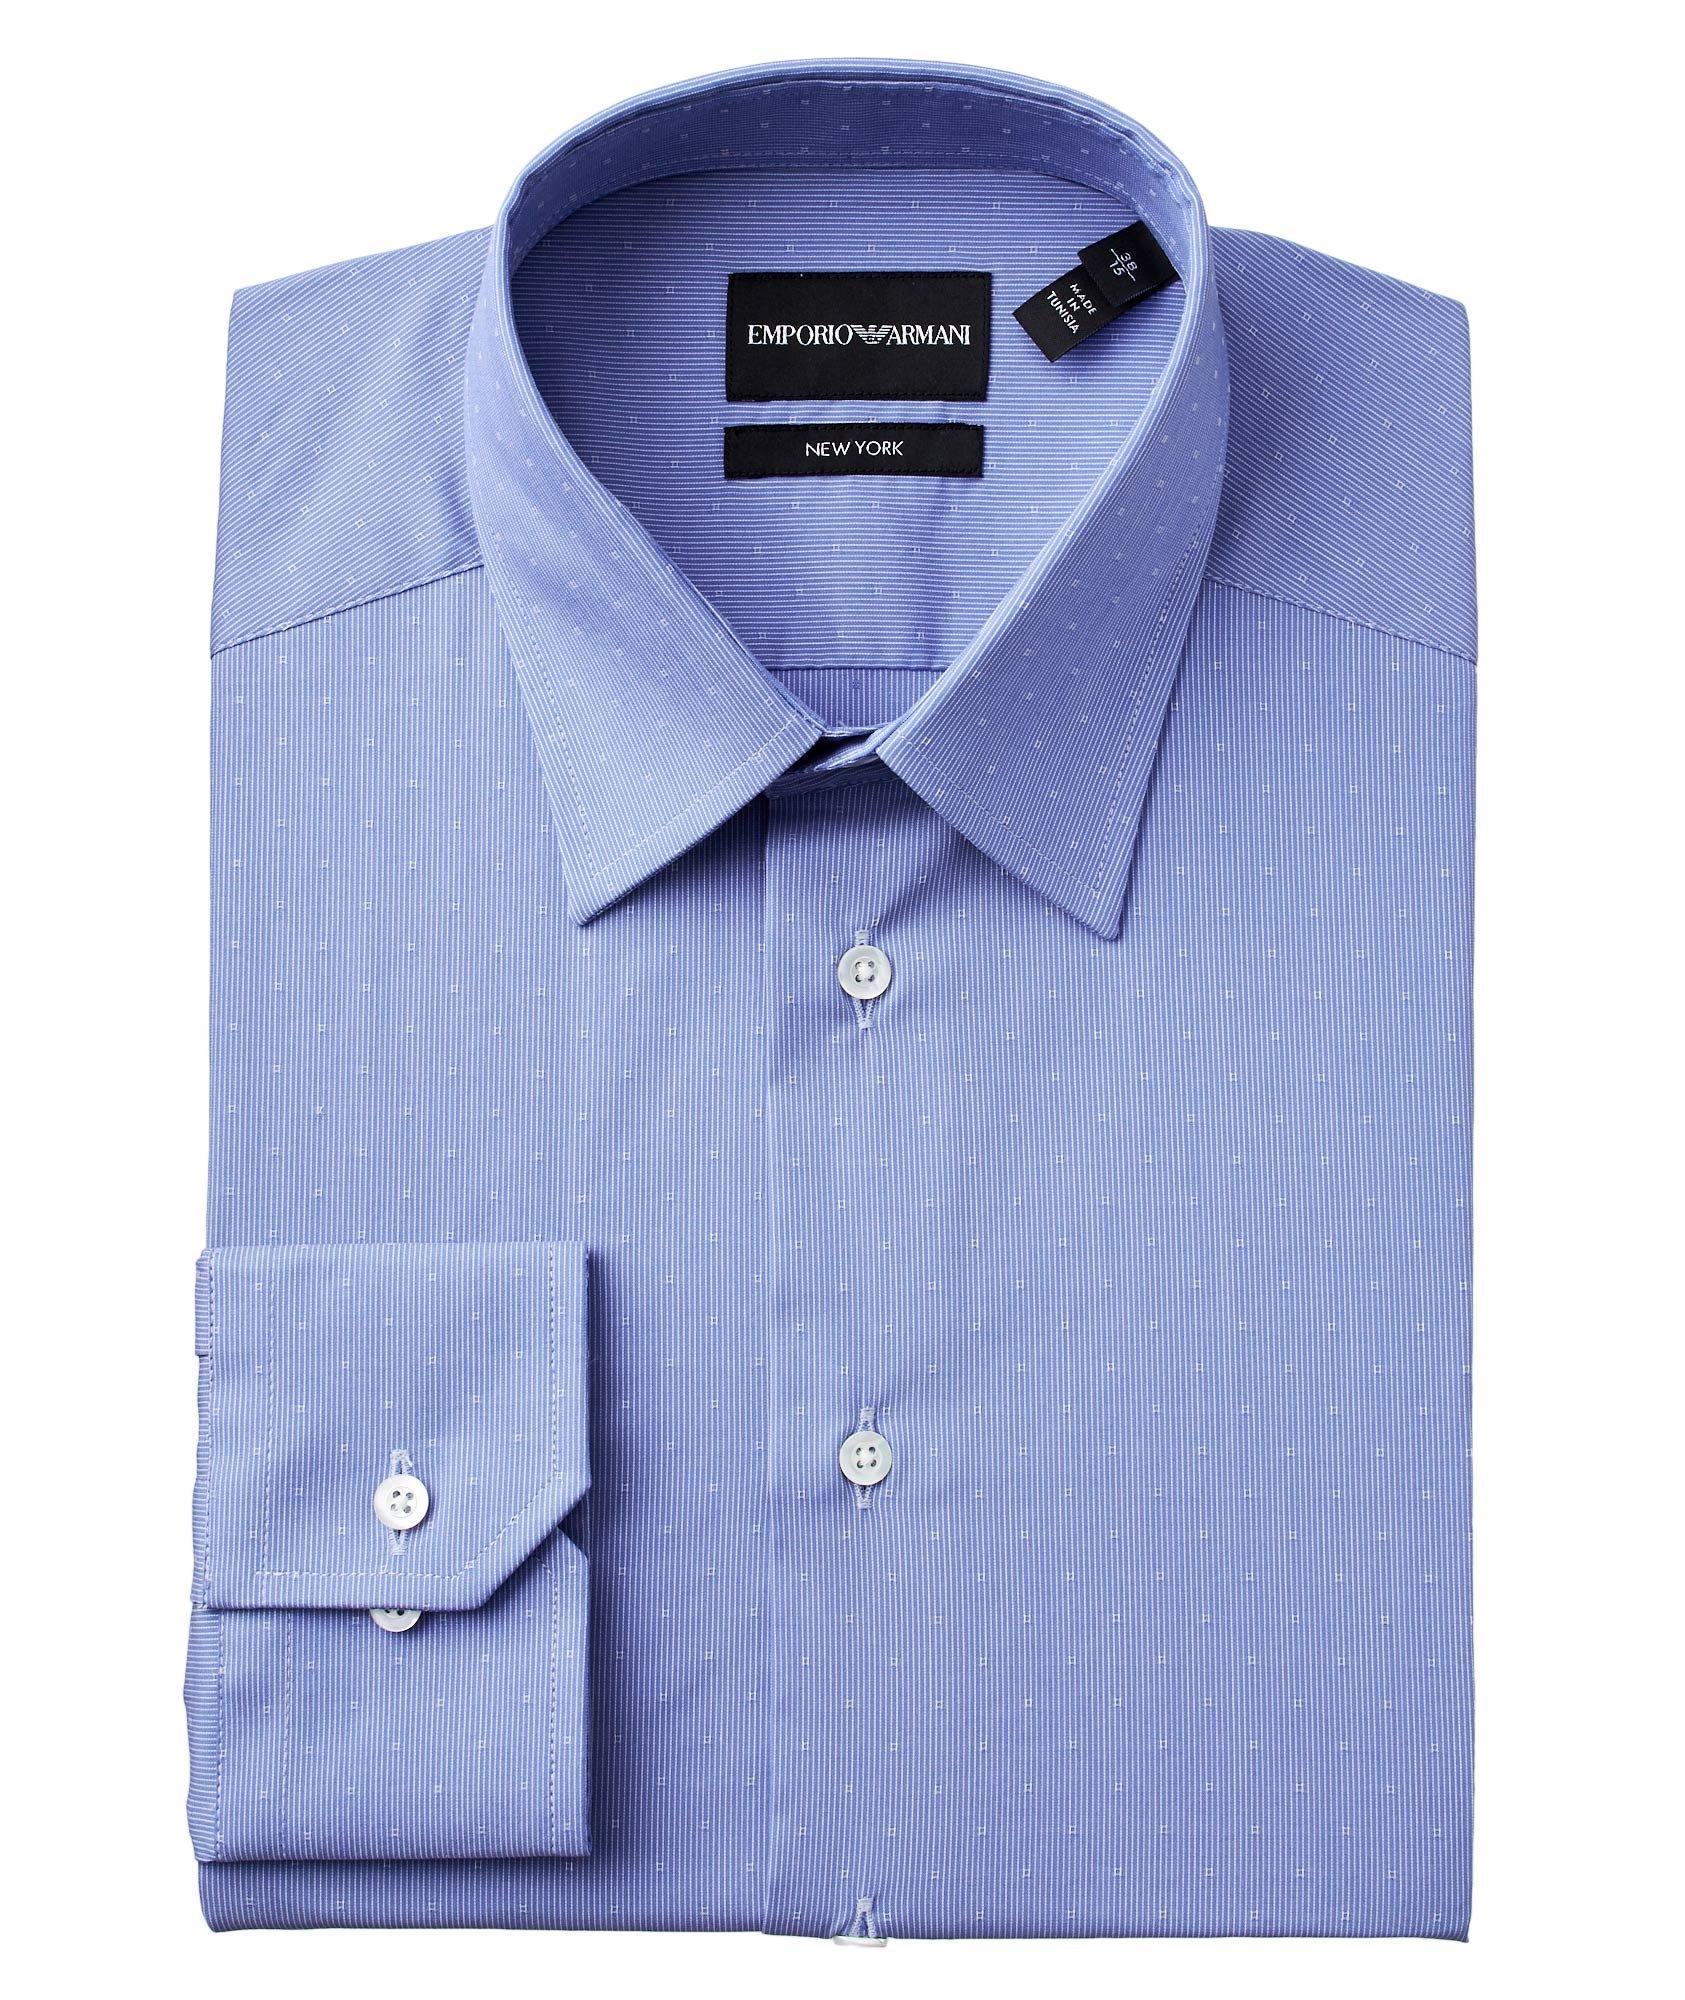 Chemise habillée en coton extensible de coupe amincie image 0